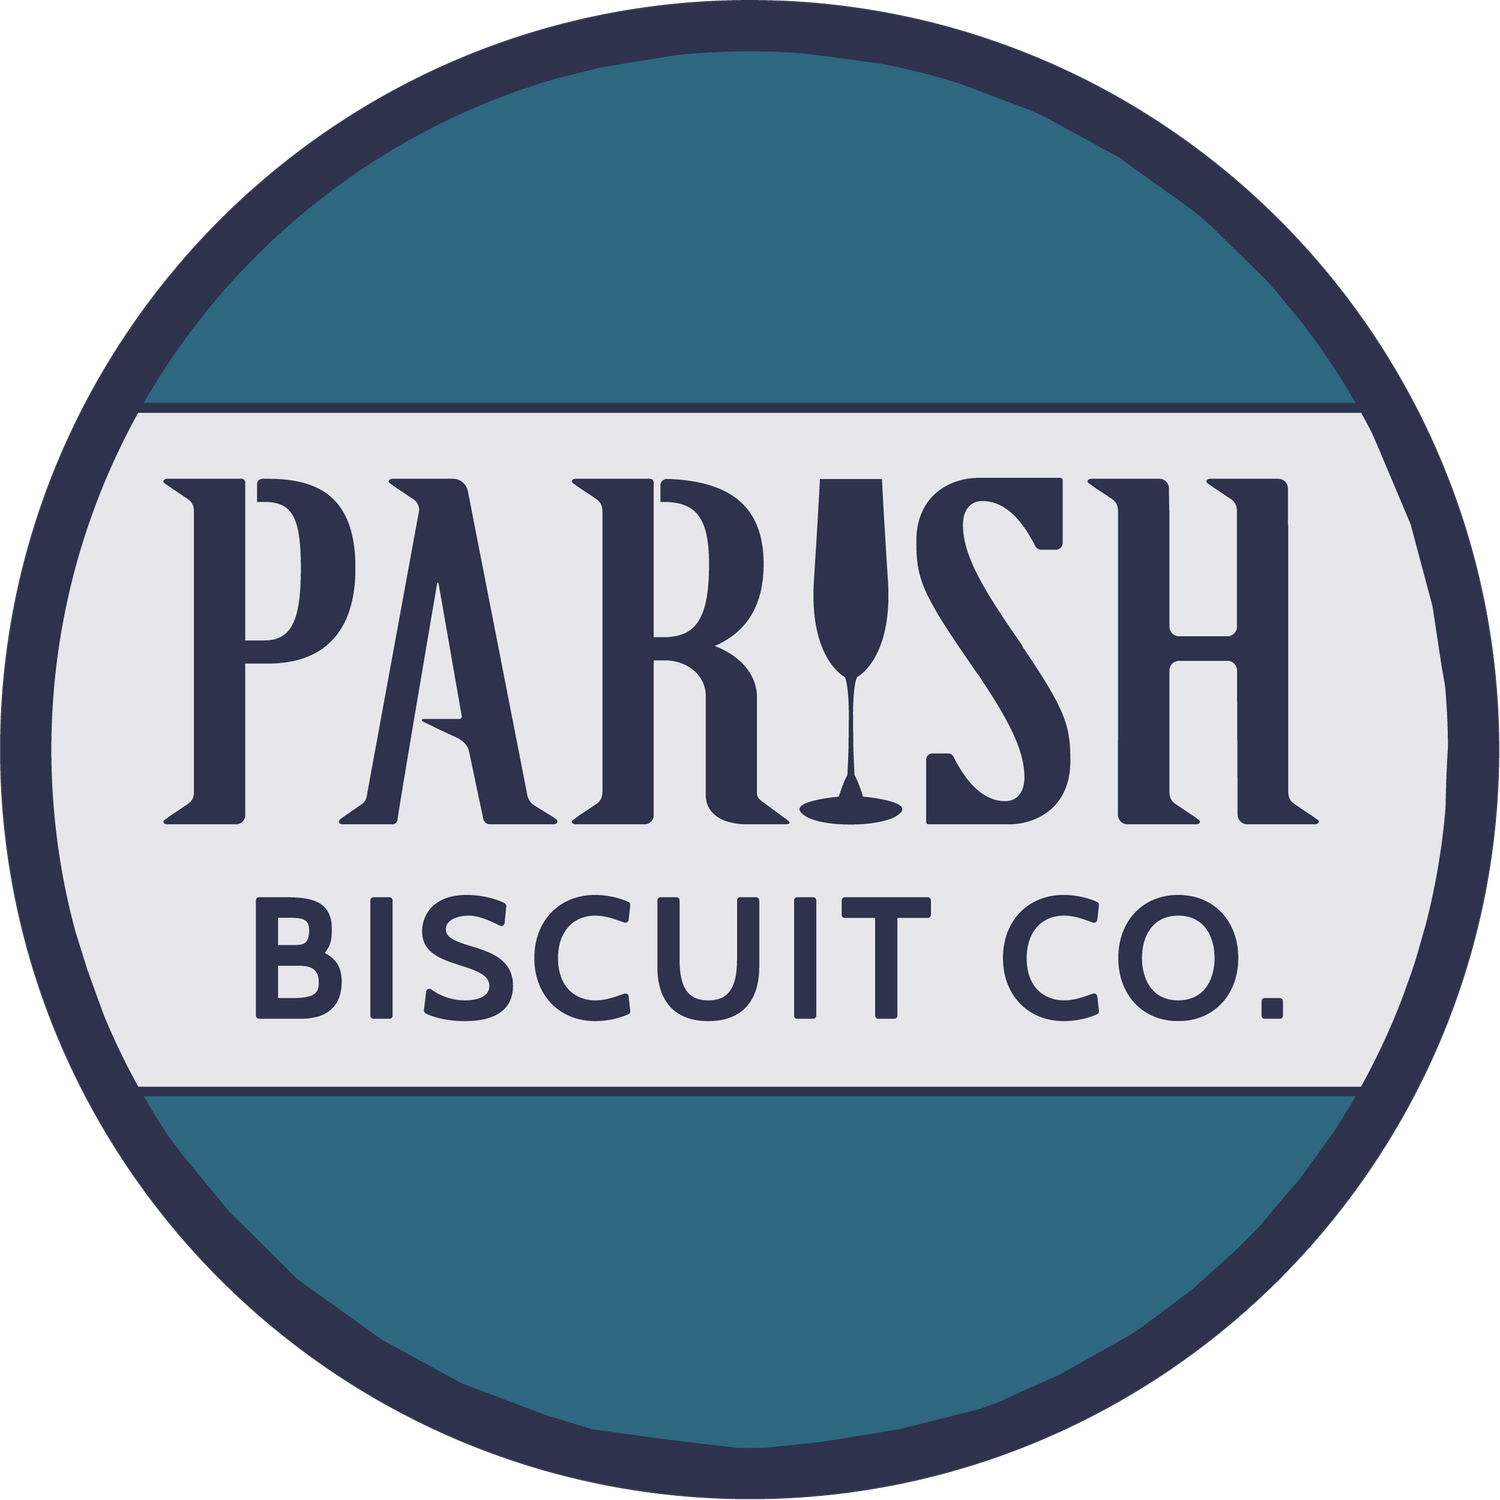 Parish Biscuit Co.